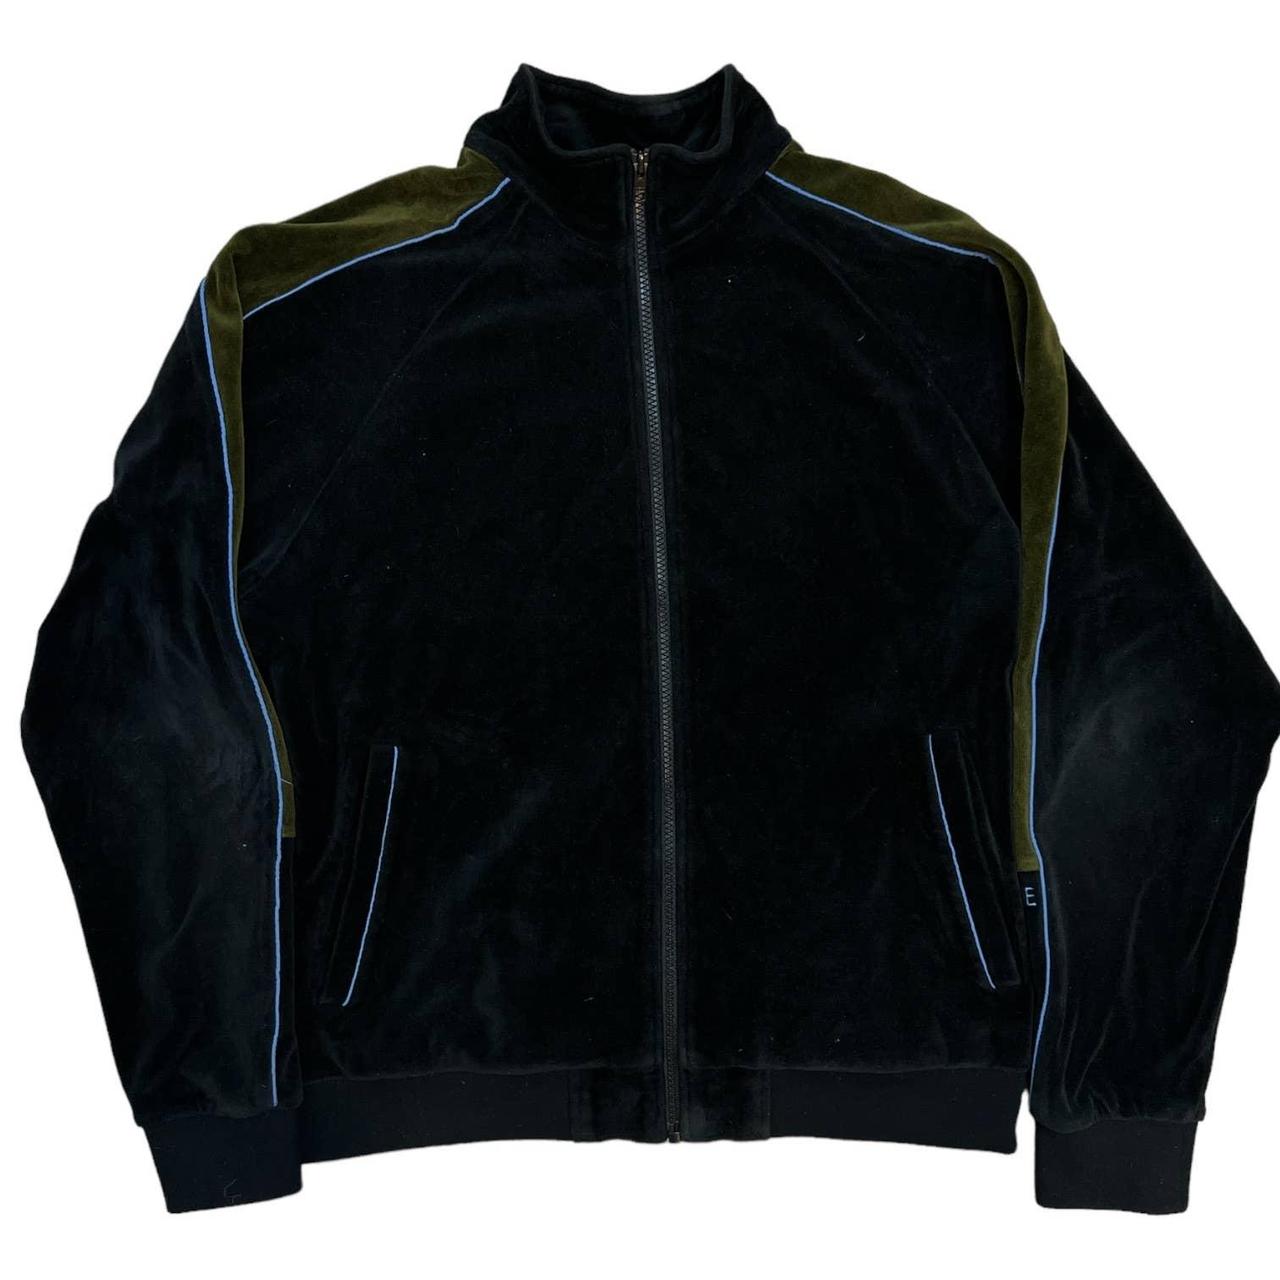 Supreme Velour Track Jacket size Medium #supreme... - Depop